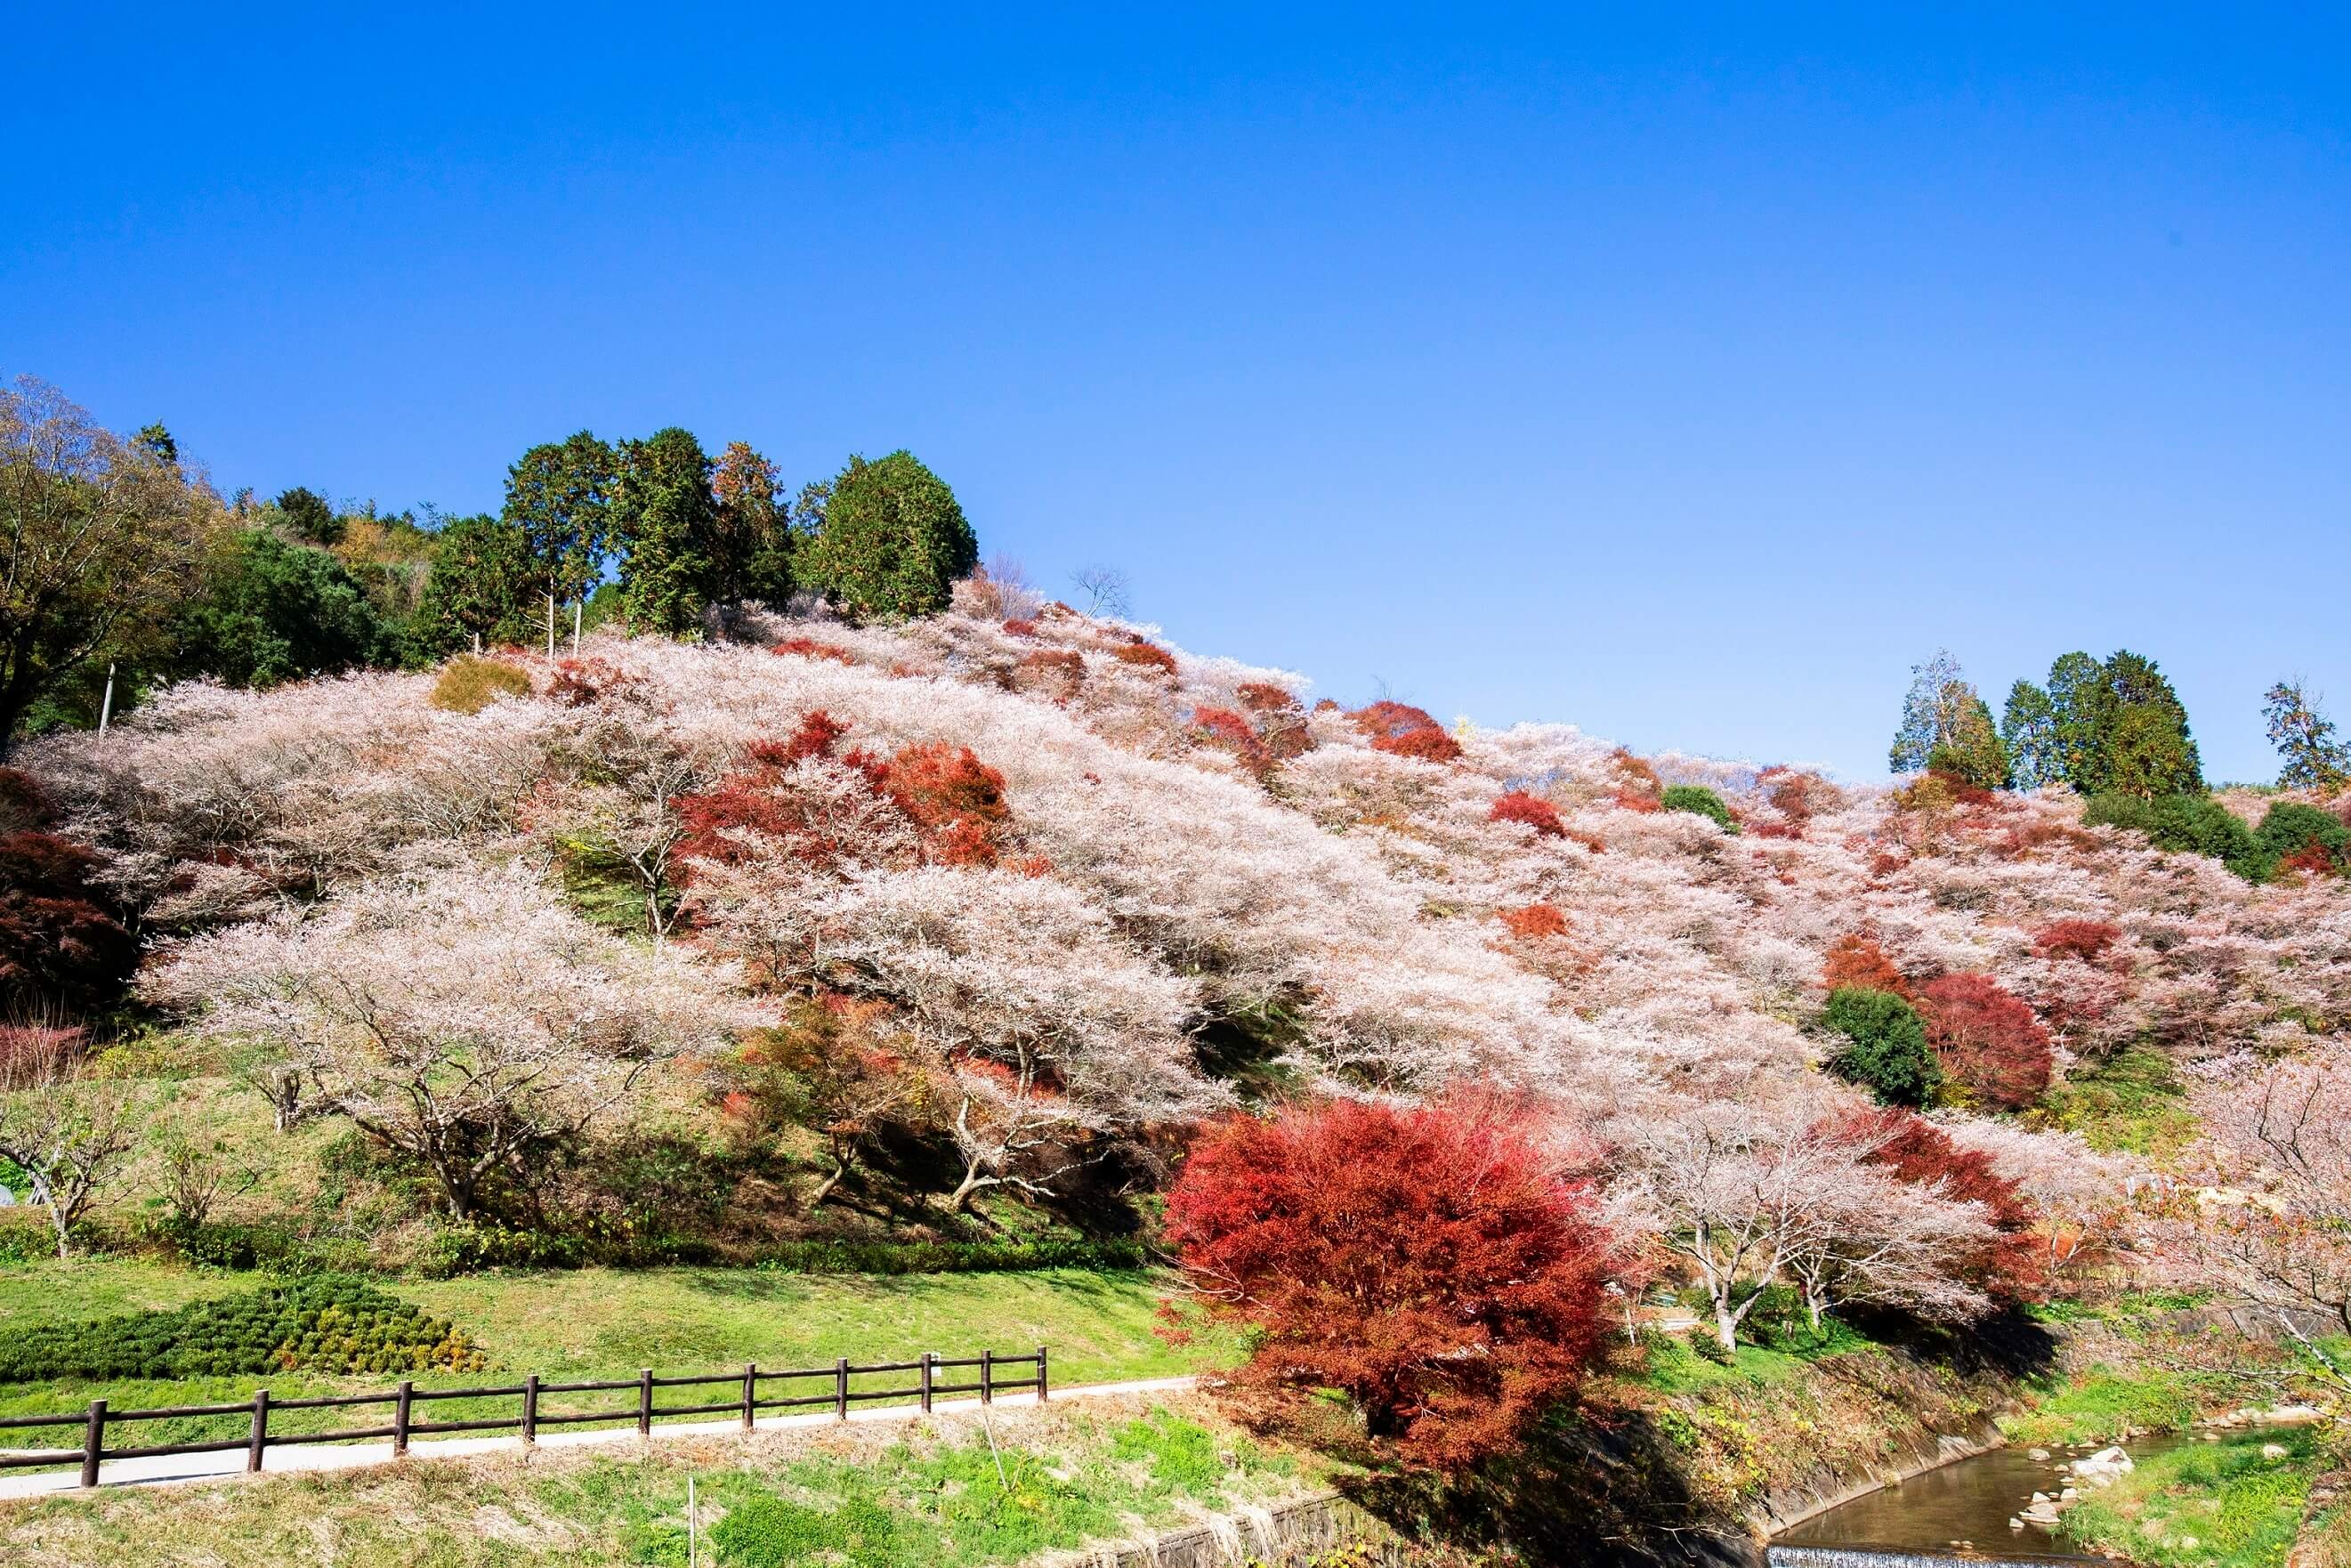 秋に咲く桜と紅葉を堪能 愛知県豊田市 小原四季桜まつり 香嵐渓もみじまつり Moshi Moshi Nippon もしもしにっぽん